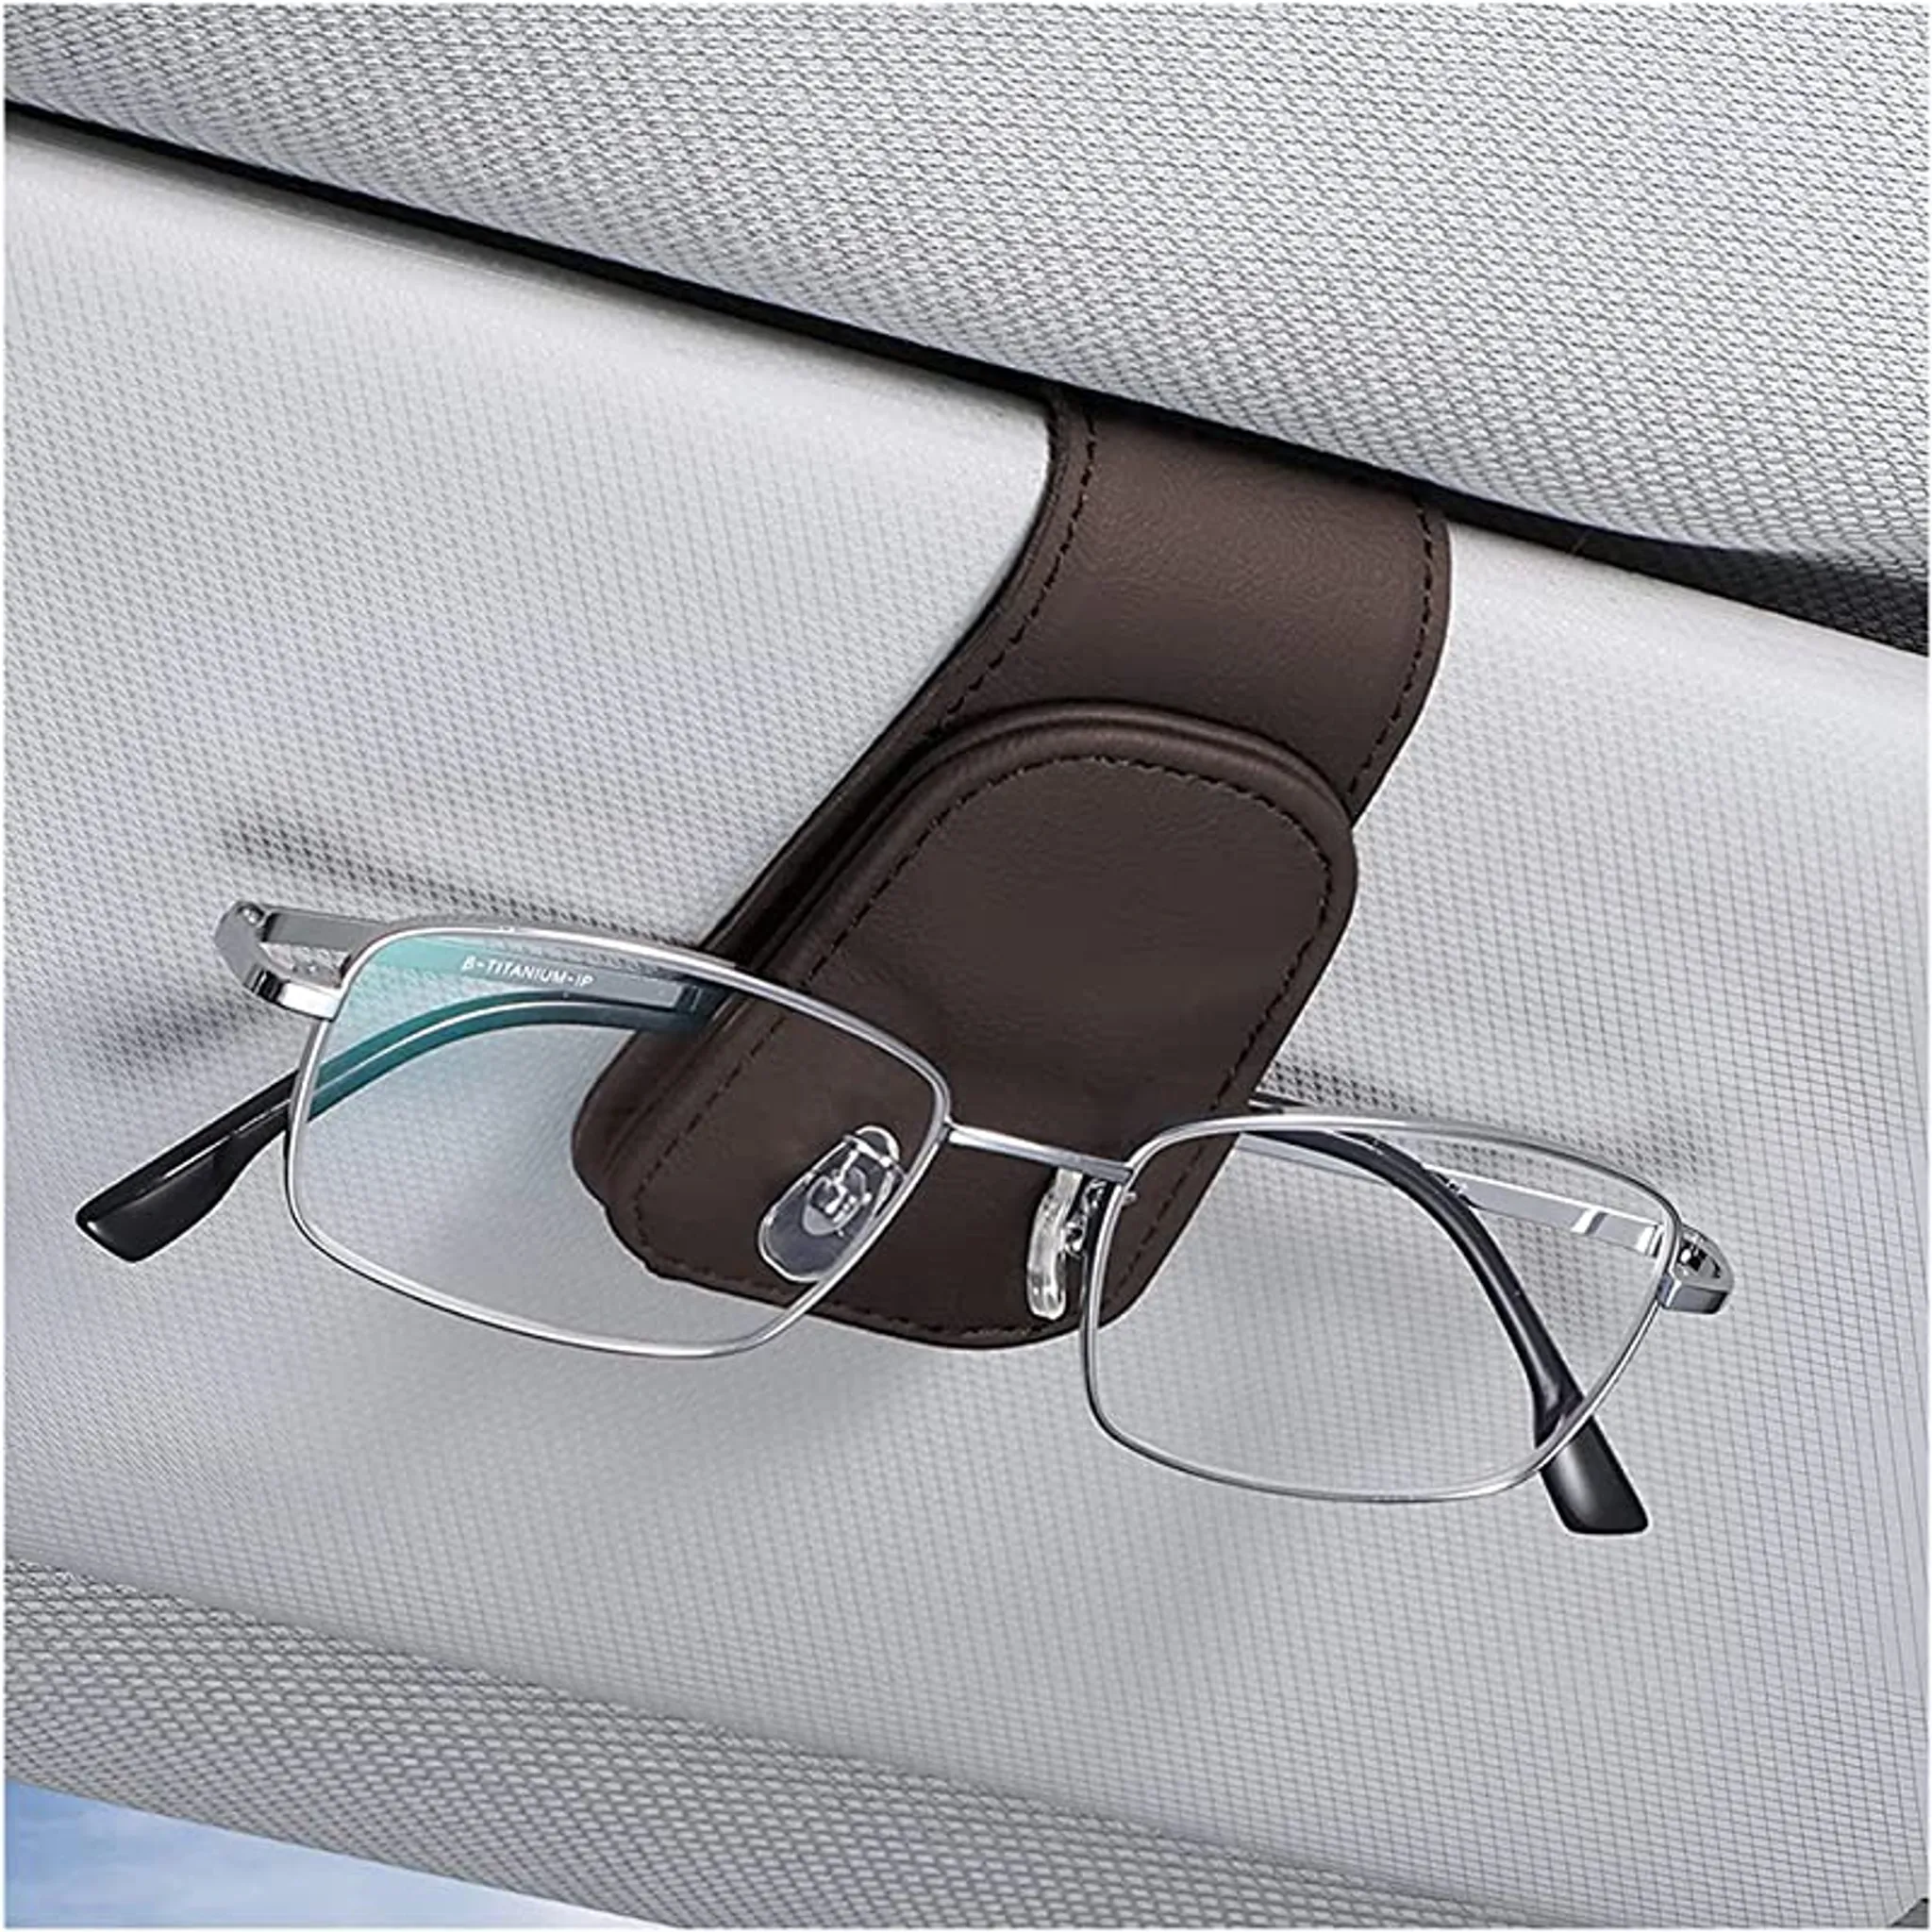 Auto Sonnenblende Brillenhalter Sonnenbrillen Etui Universal Automotive  Funkelnde Kristalle Brillenhalter Schutzbox Aufbewahrungsbox Organizer Mit  Mag